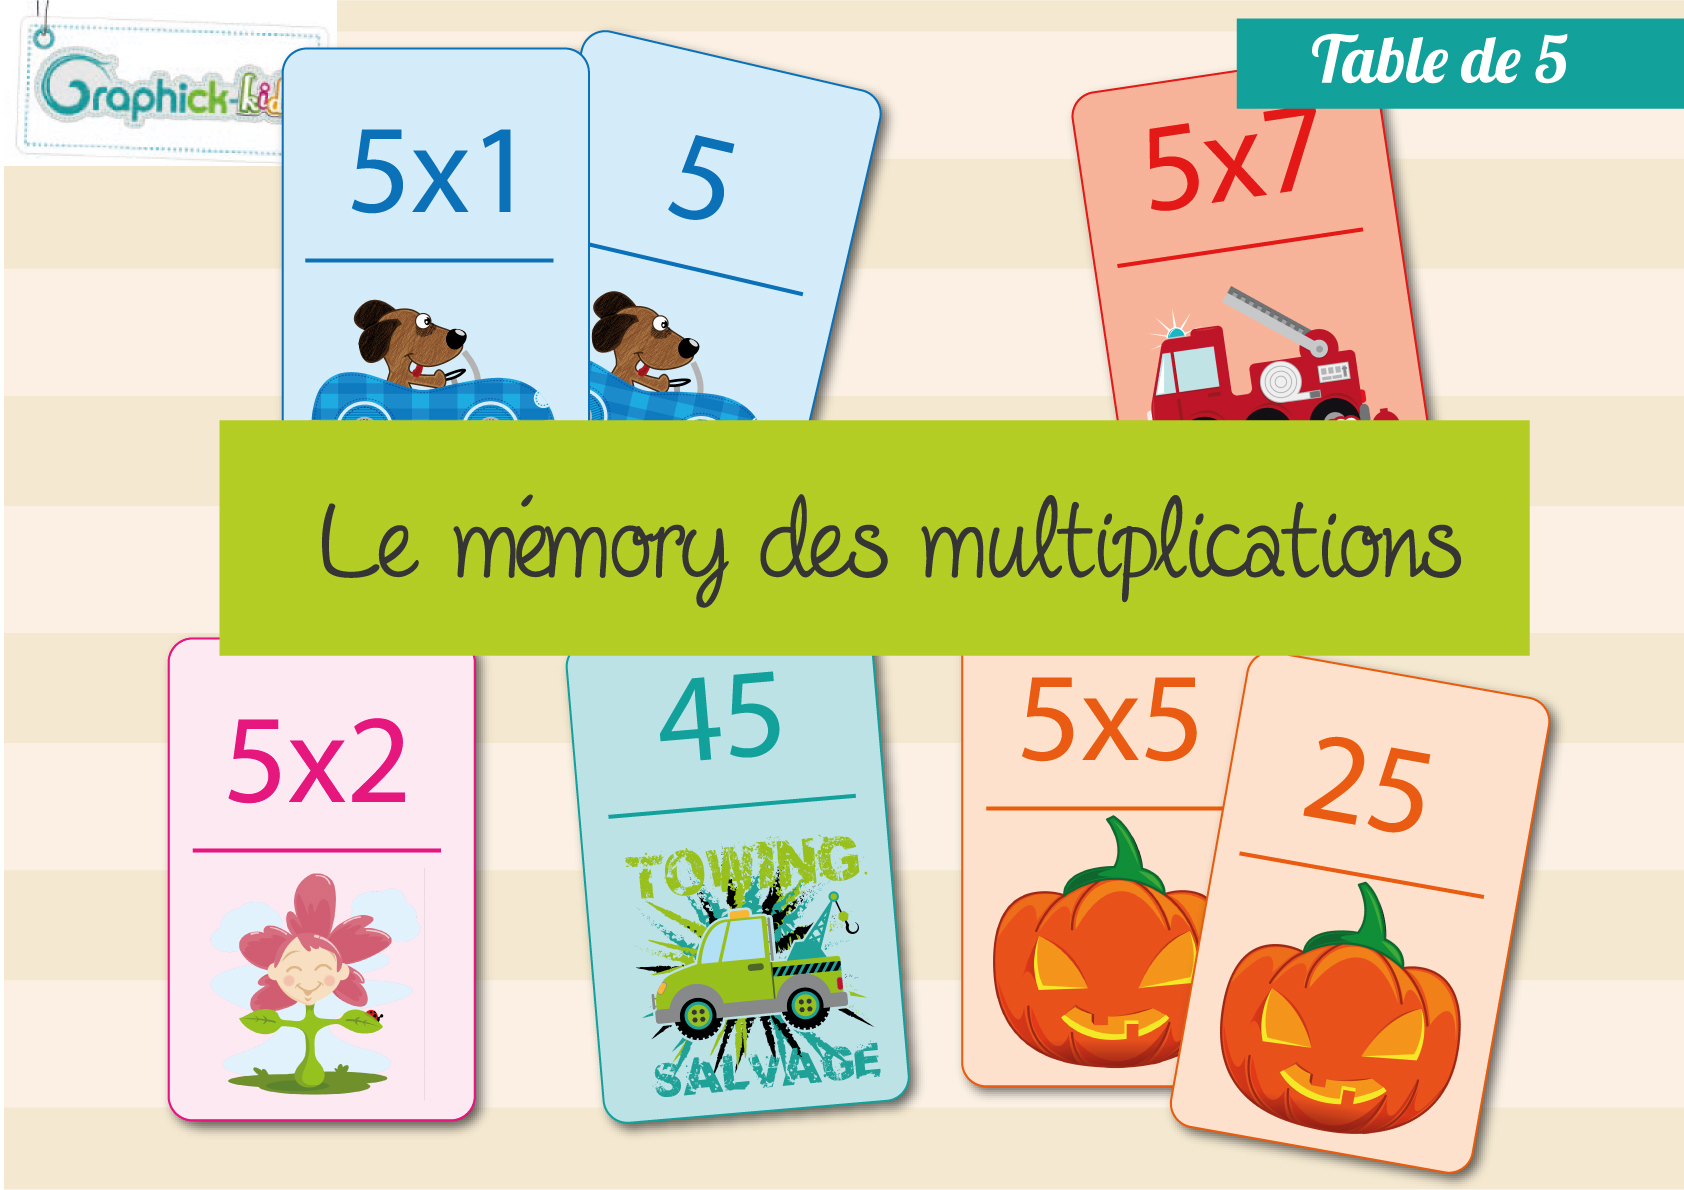 Apprendre et retenir les tables de multiplications de 2 à 20